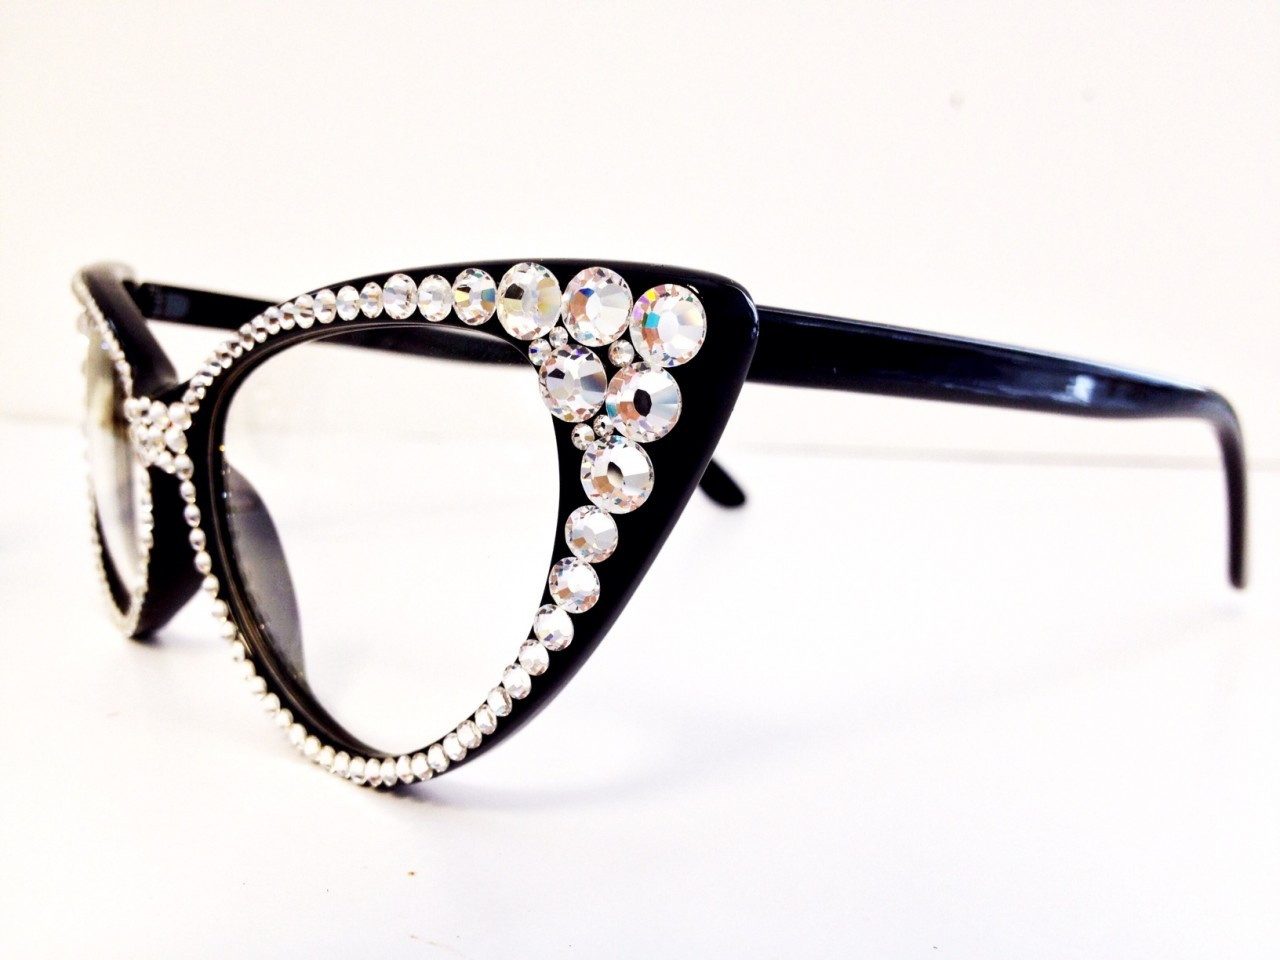 Cat Eye Glasses Frames, Rita Black & Gold